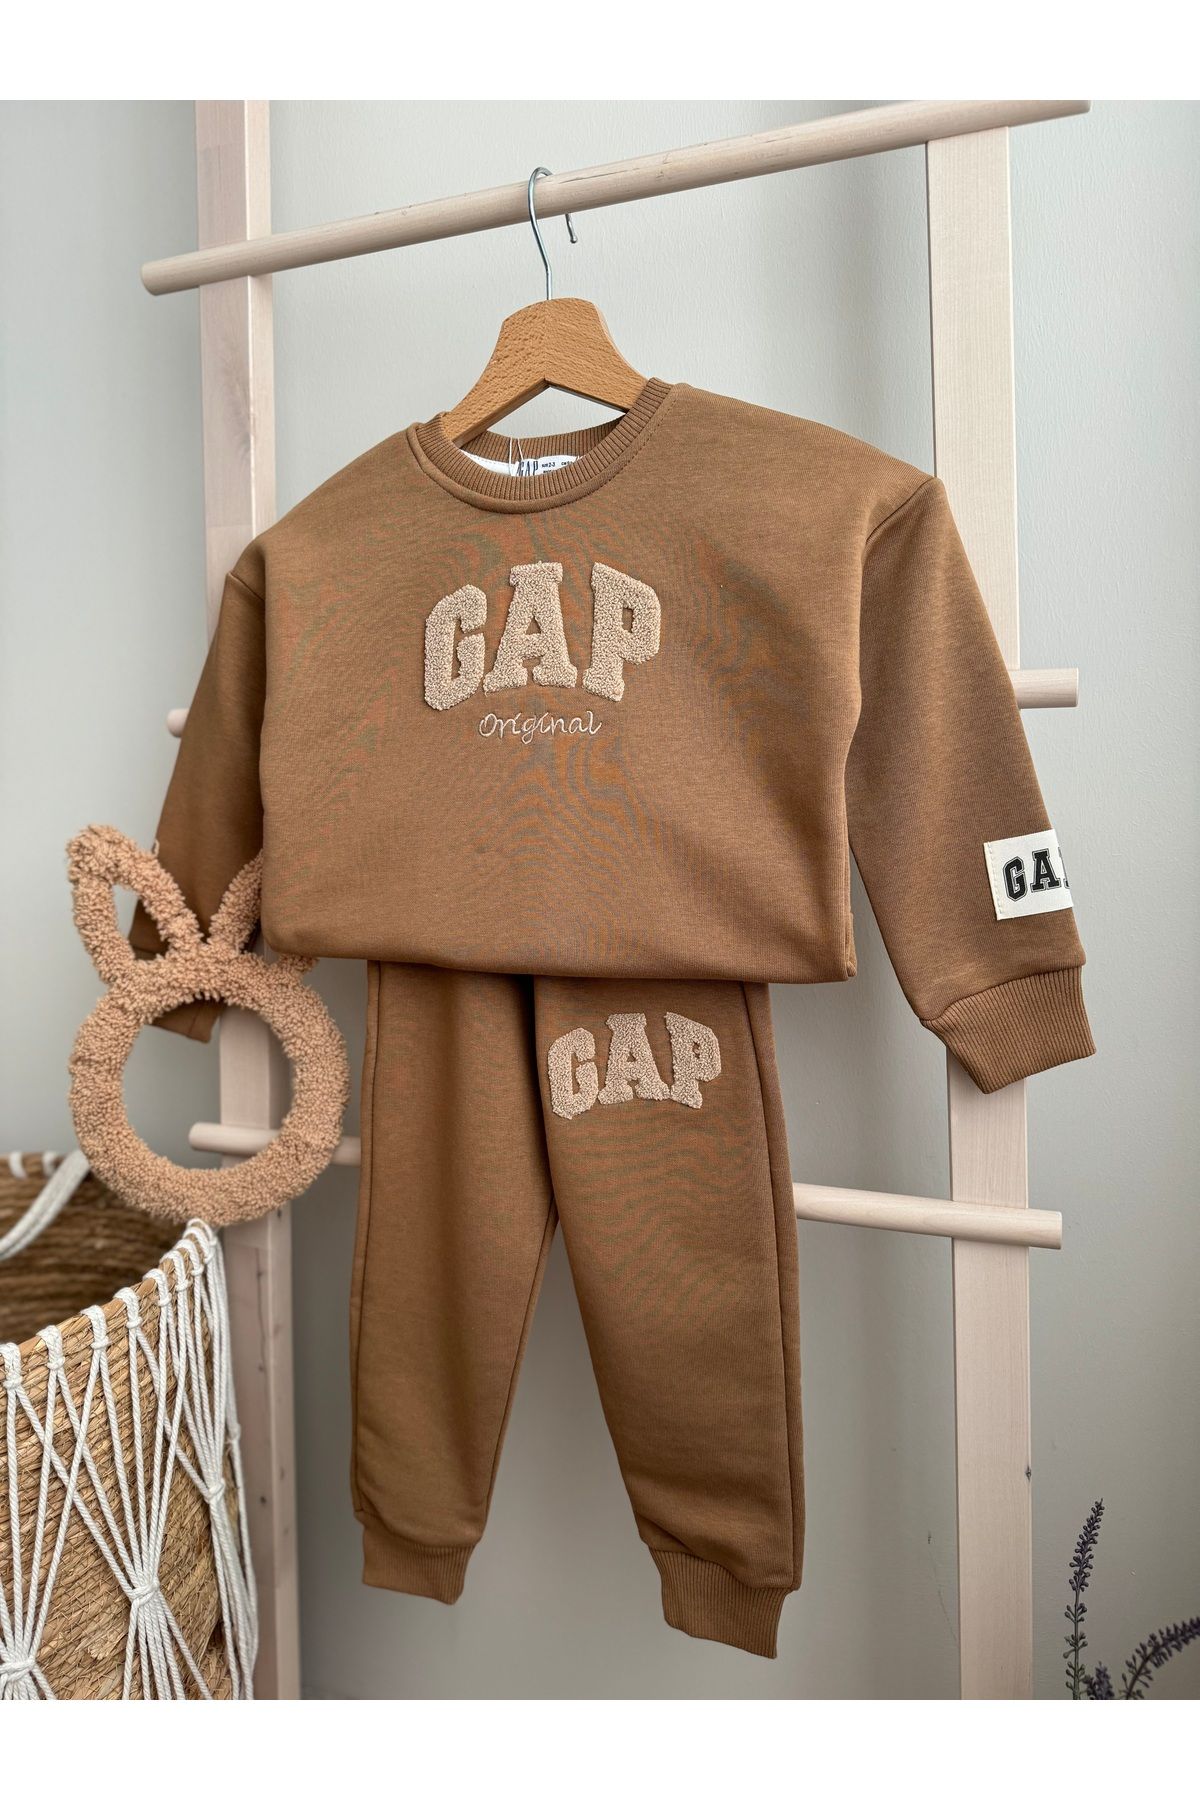 GAP Premium Kalite Gap Çocuk Takım / Gap Alt -Üst Takım